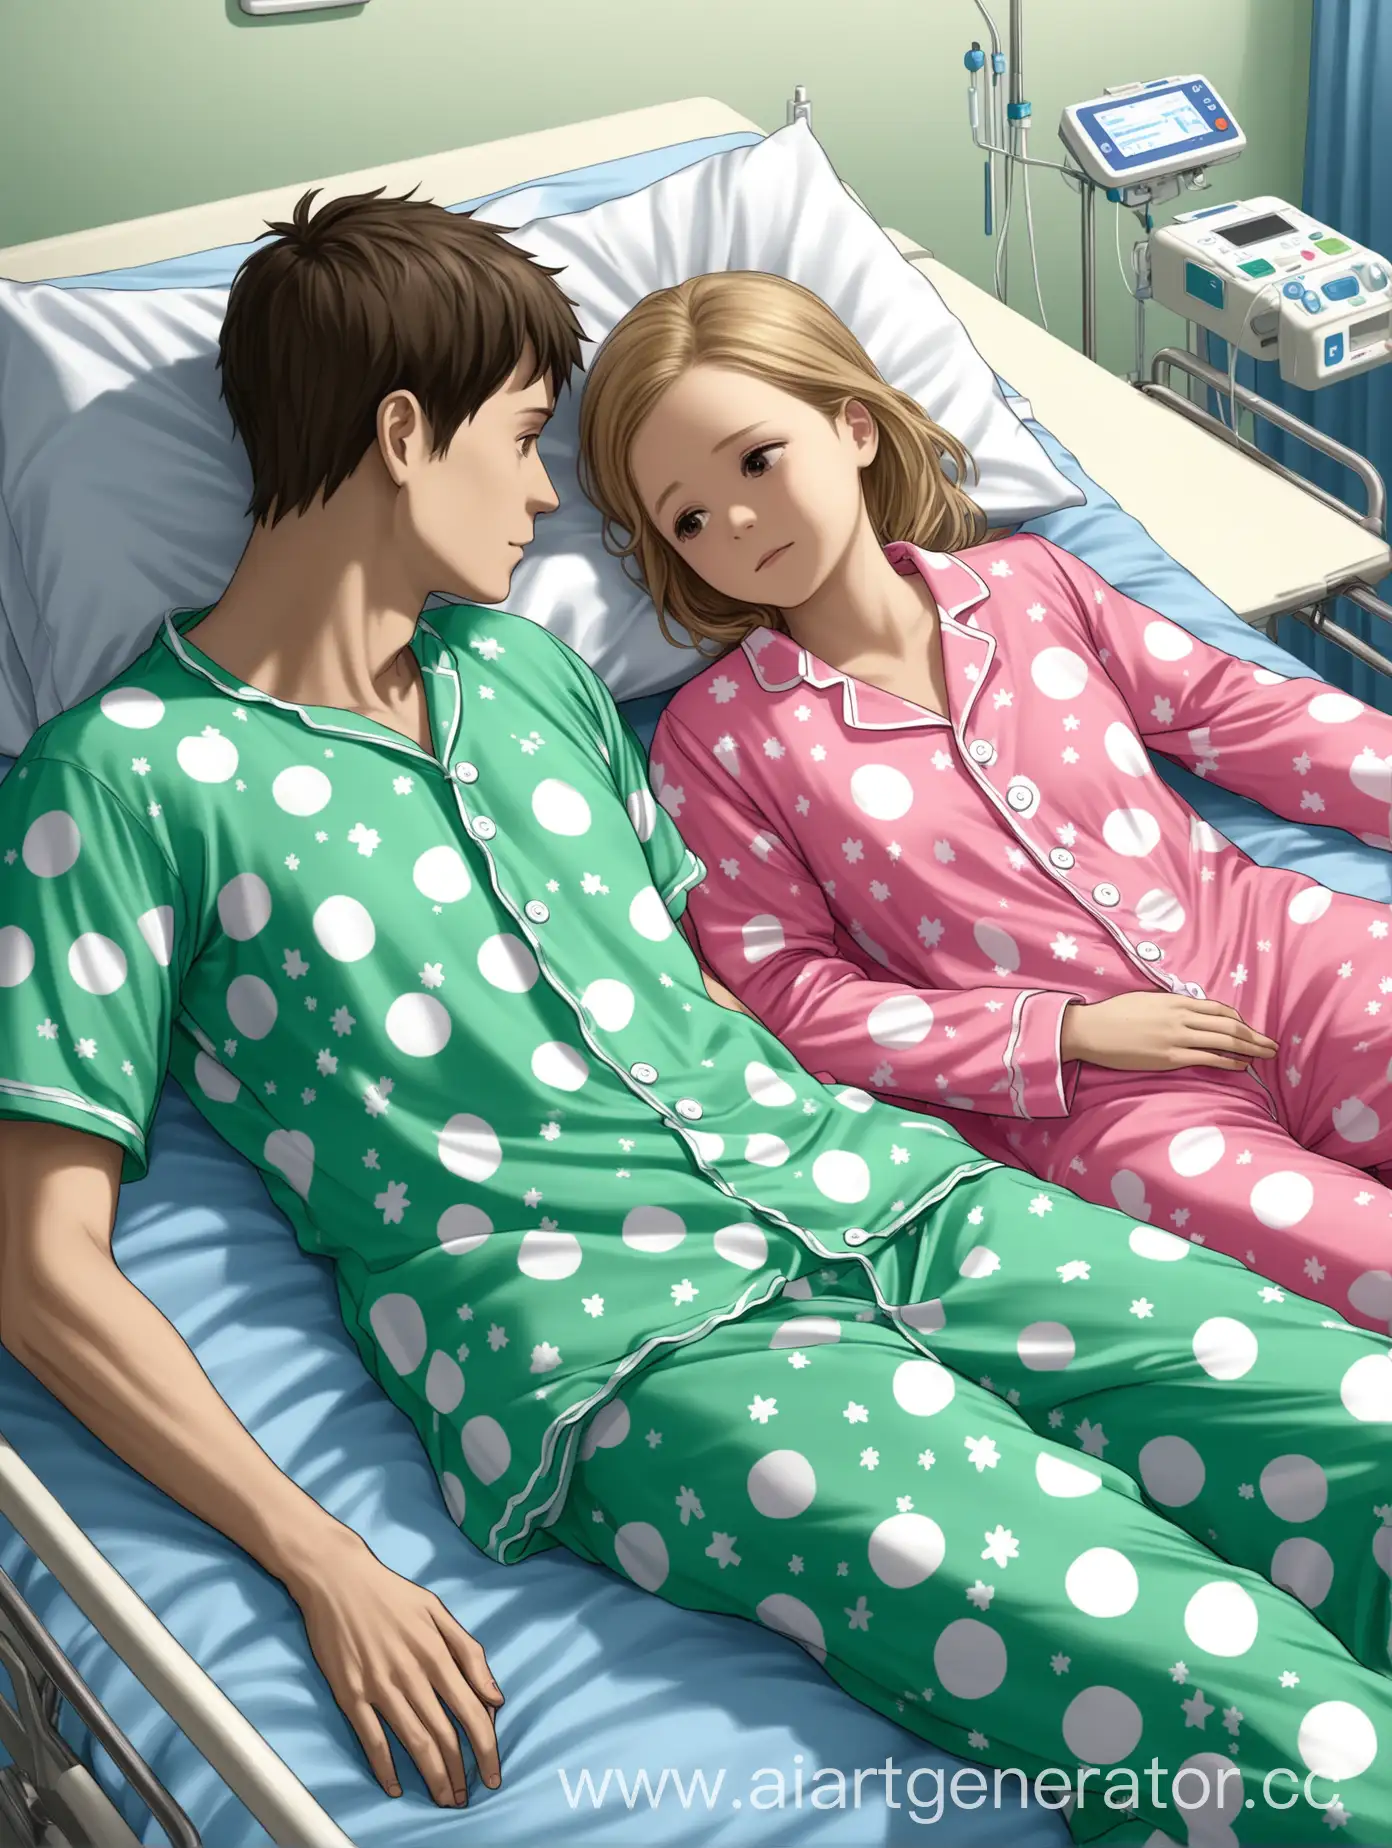 Девочка лежит в больничной палате в цветной пижаме и рям с ней мальчик в цветной пижаме